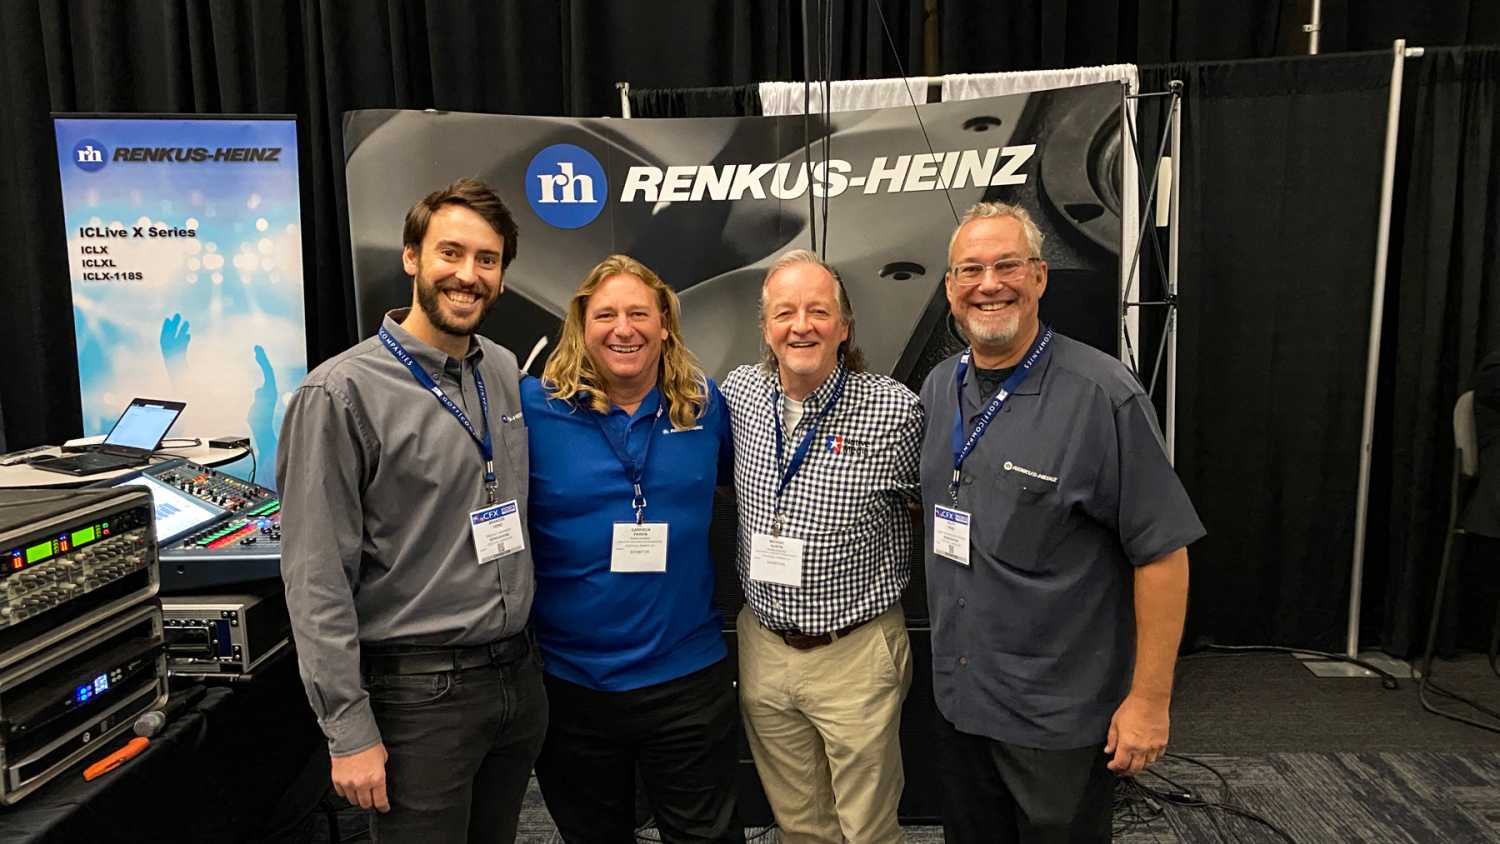 Team Renkus-Heinz will be in Dallas